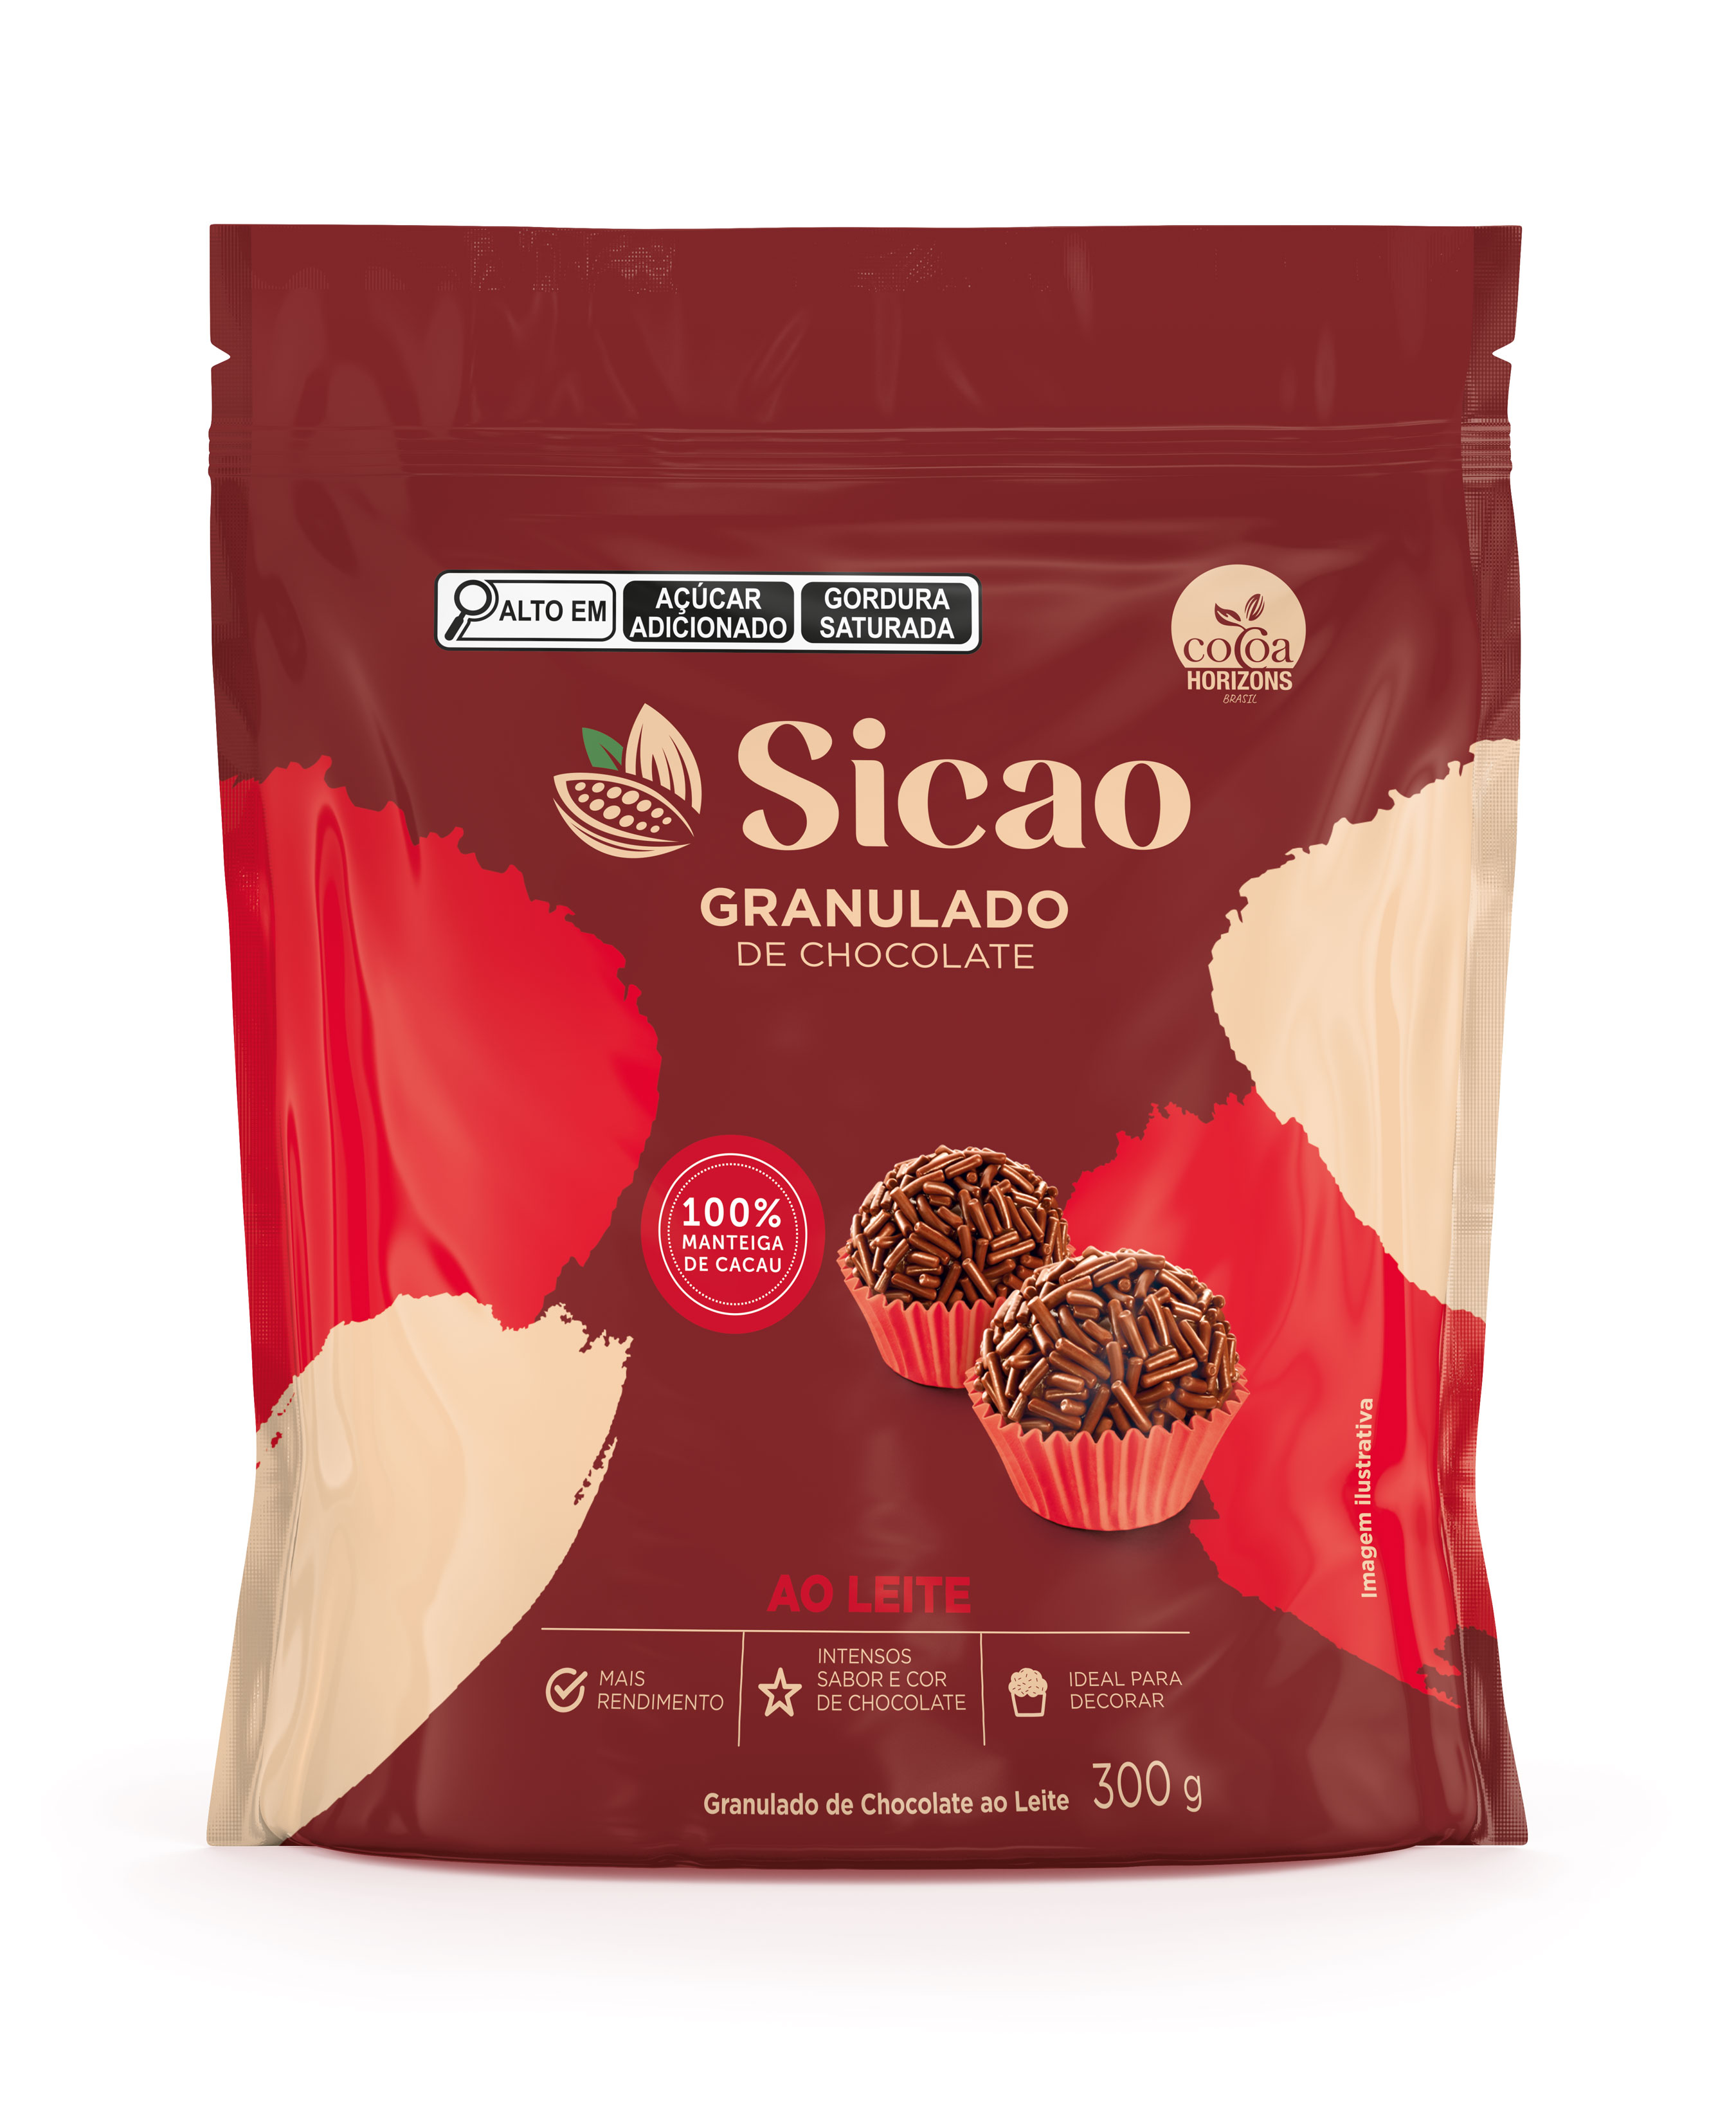 Granulado de Chocolate ao Leite Sicao - 300g (100% manteiga de cacau)